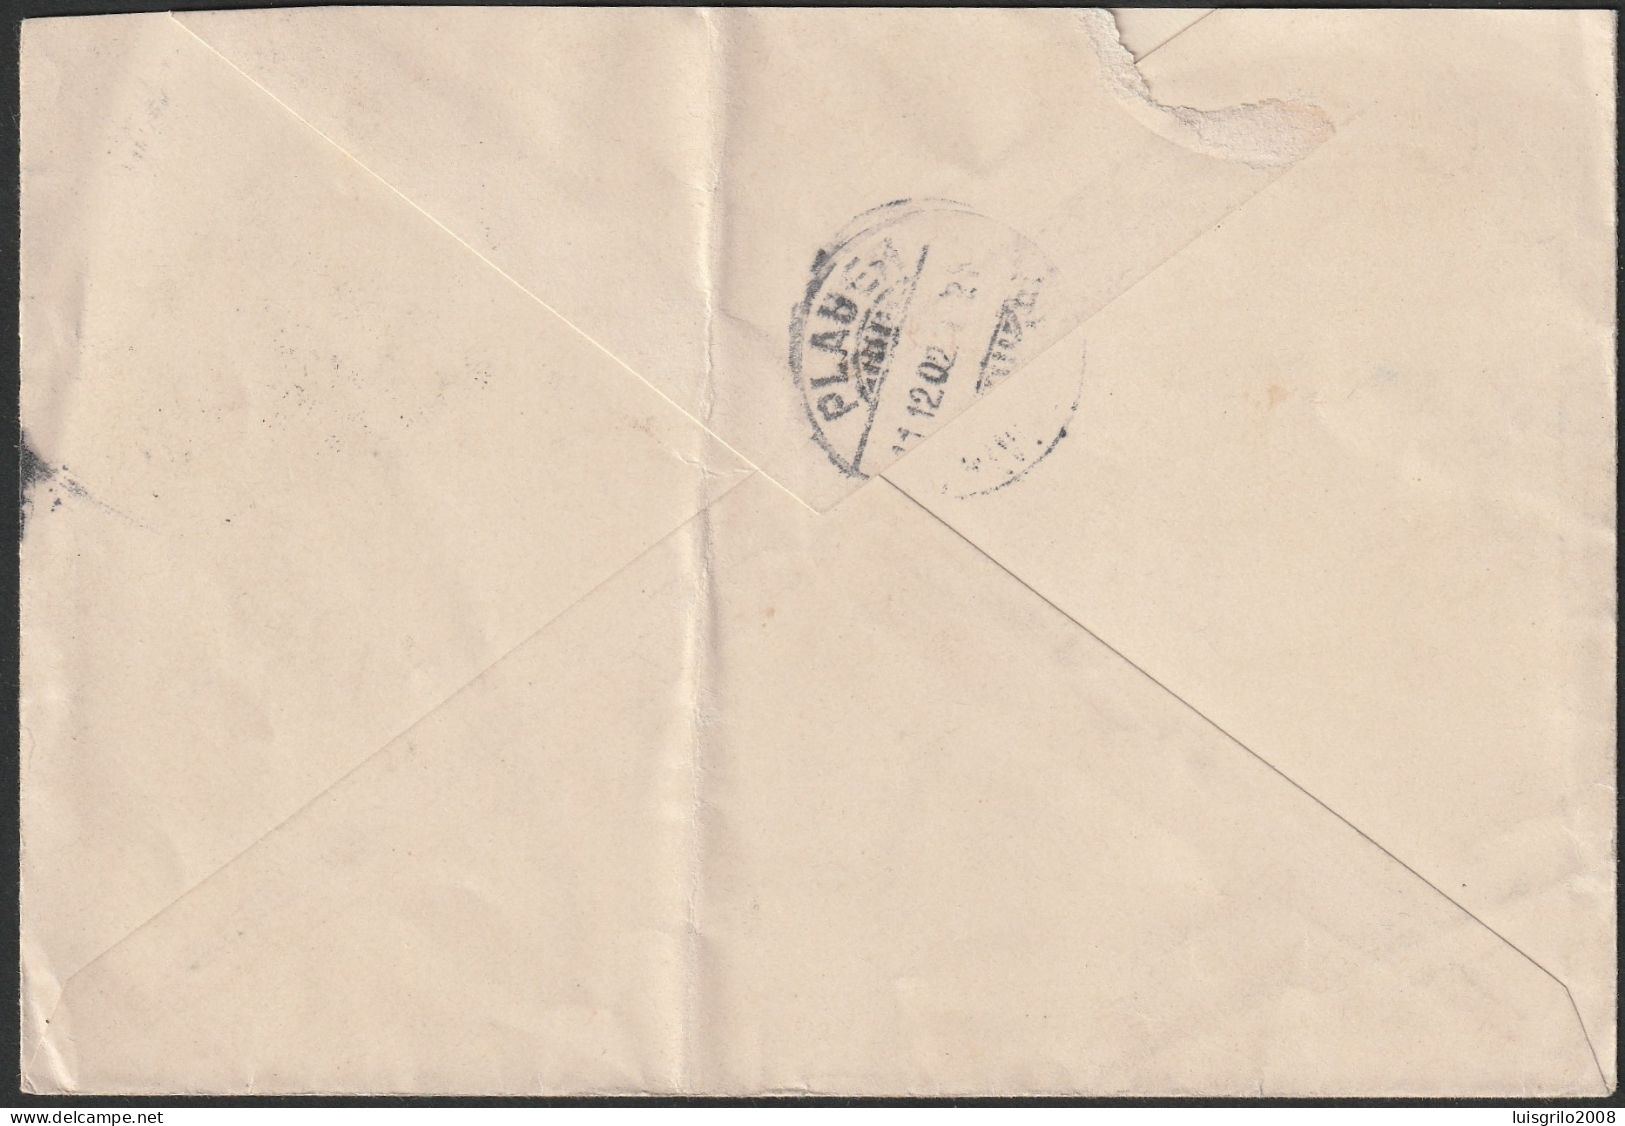 Cover - Lisboa To Planen, Allemanha (Germany) -|- Postmark - Lisboa. 1902 - Briefe U. Dokumente